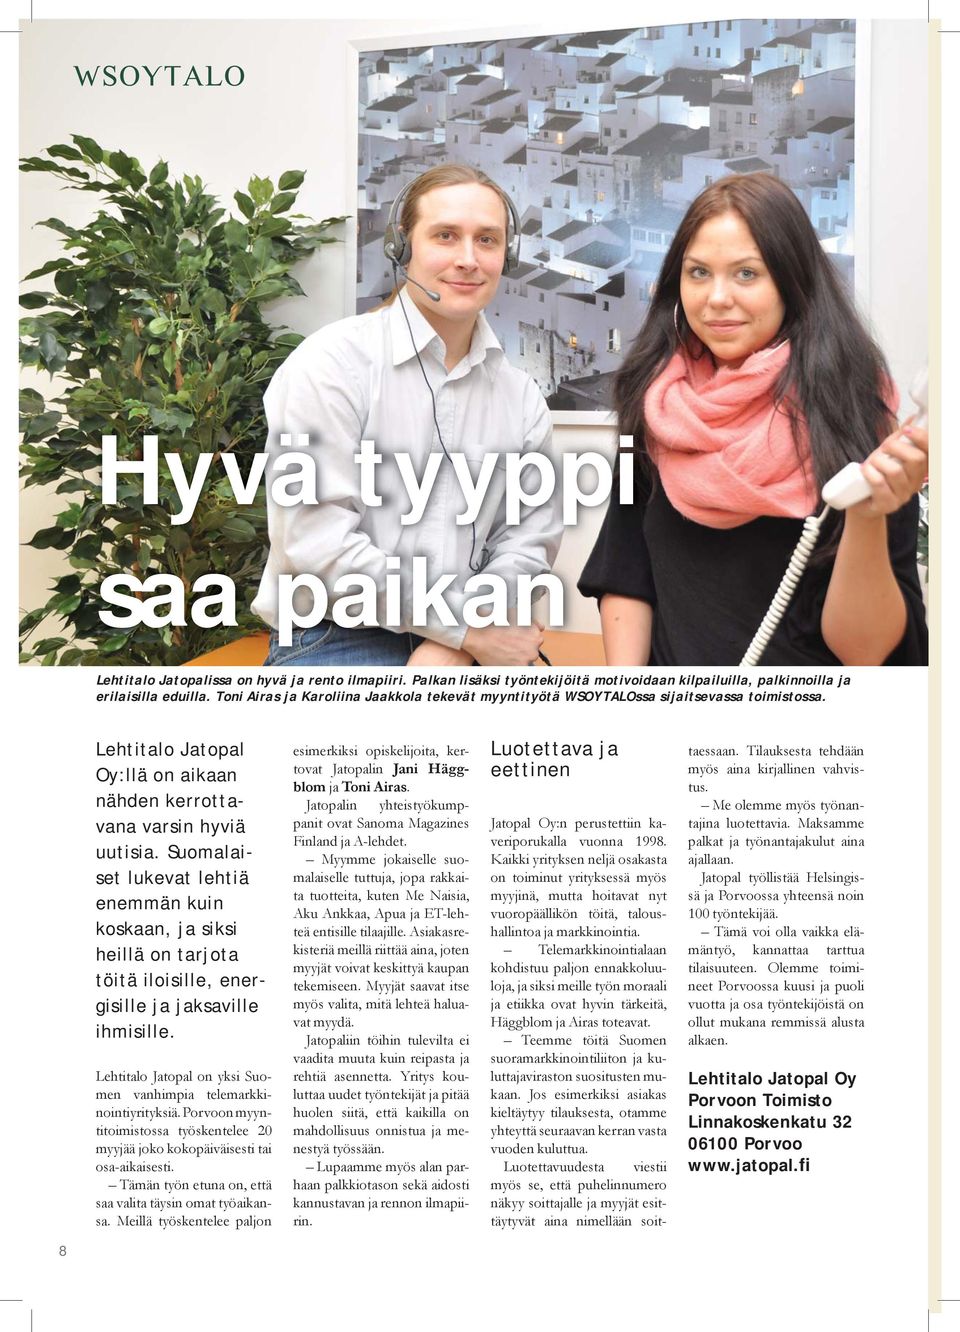 Suomalaiset lukevat lehtiä enemmän kuin koskaan, ja siksi heillä on tarjota töitä iloisille, energisille ja jaksaville ihmisille. Lehtitalo Jatopal on yksi Suomen vanhimpia telemarkkinointiyrityksiä.